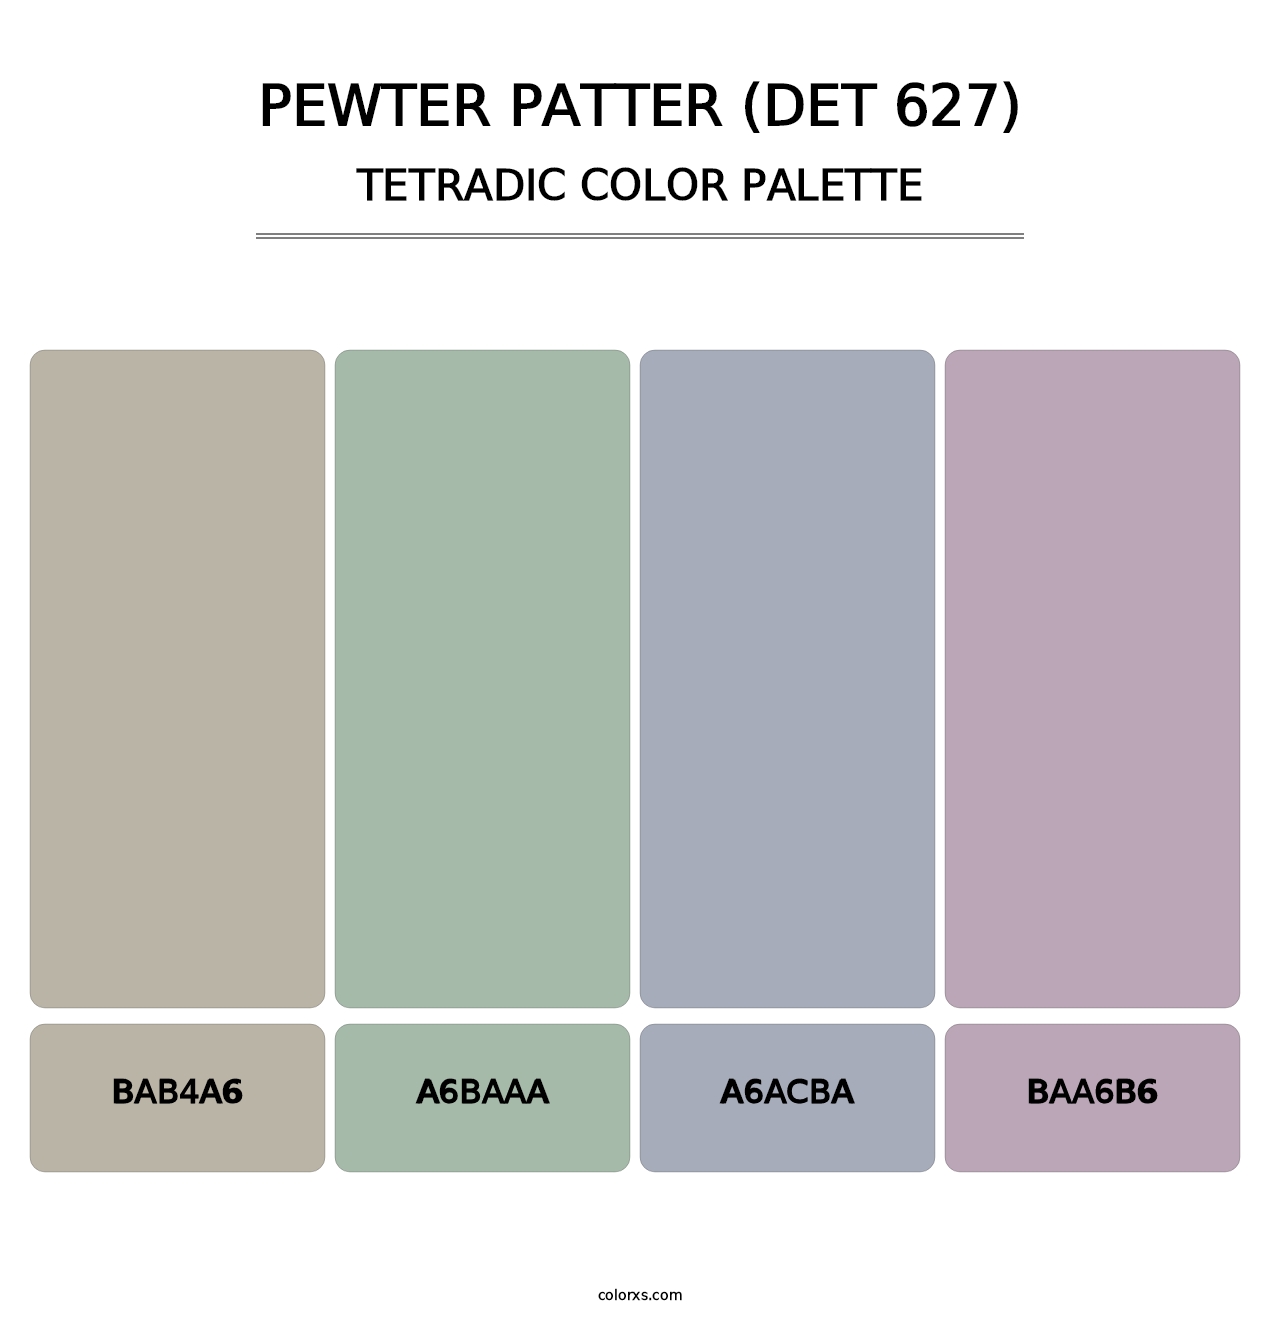 Pewter Patter (DET 627) - Tetradic Color Palette